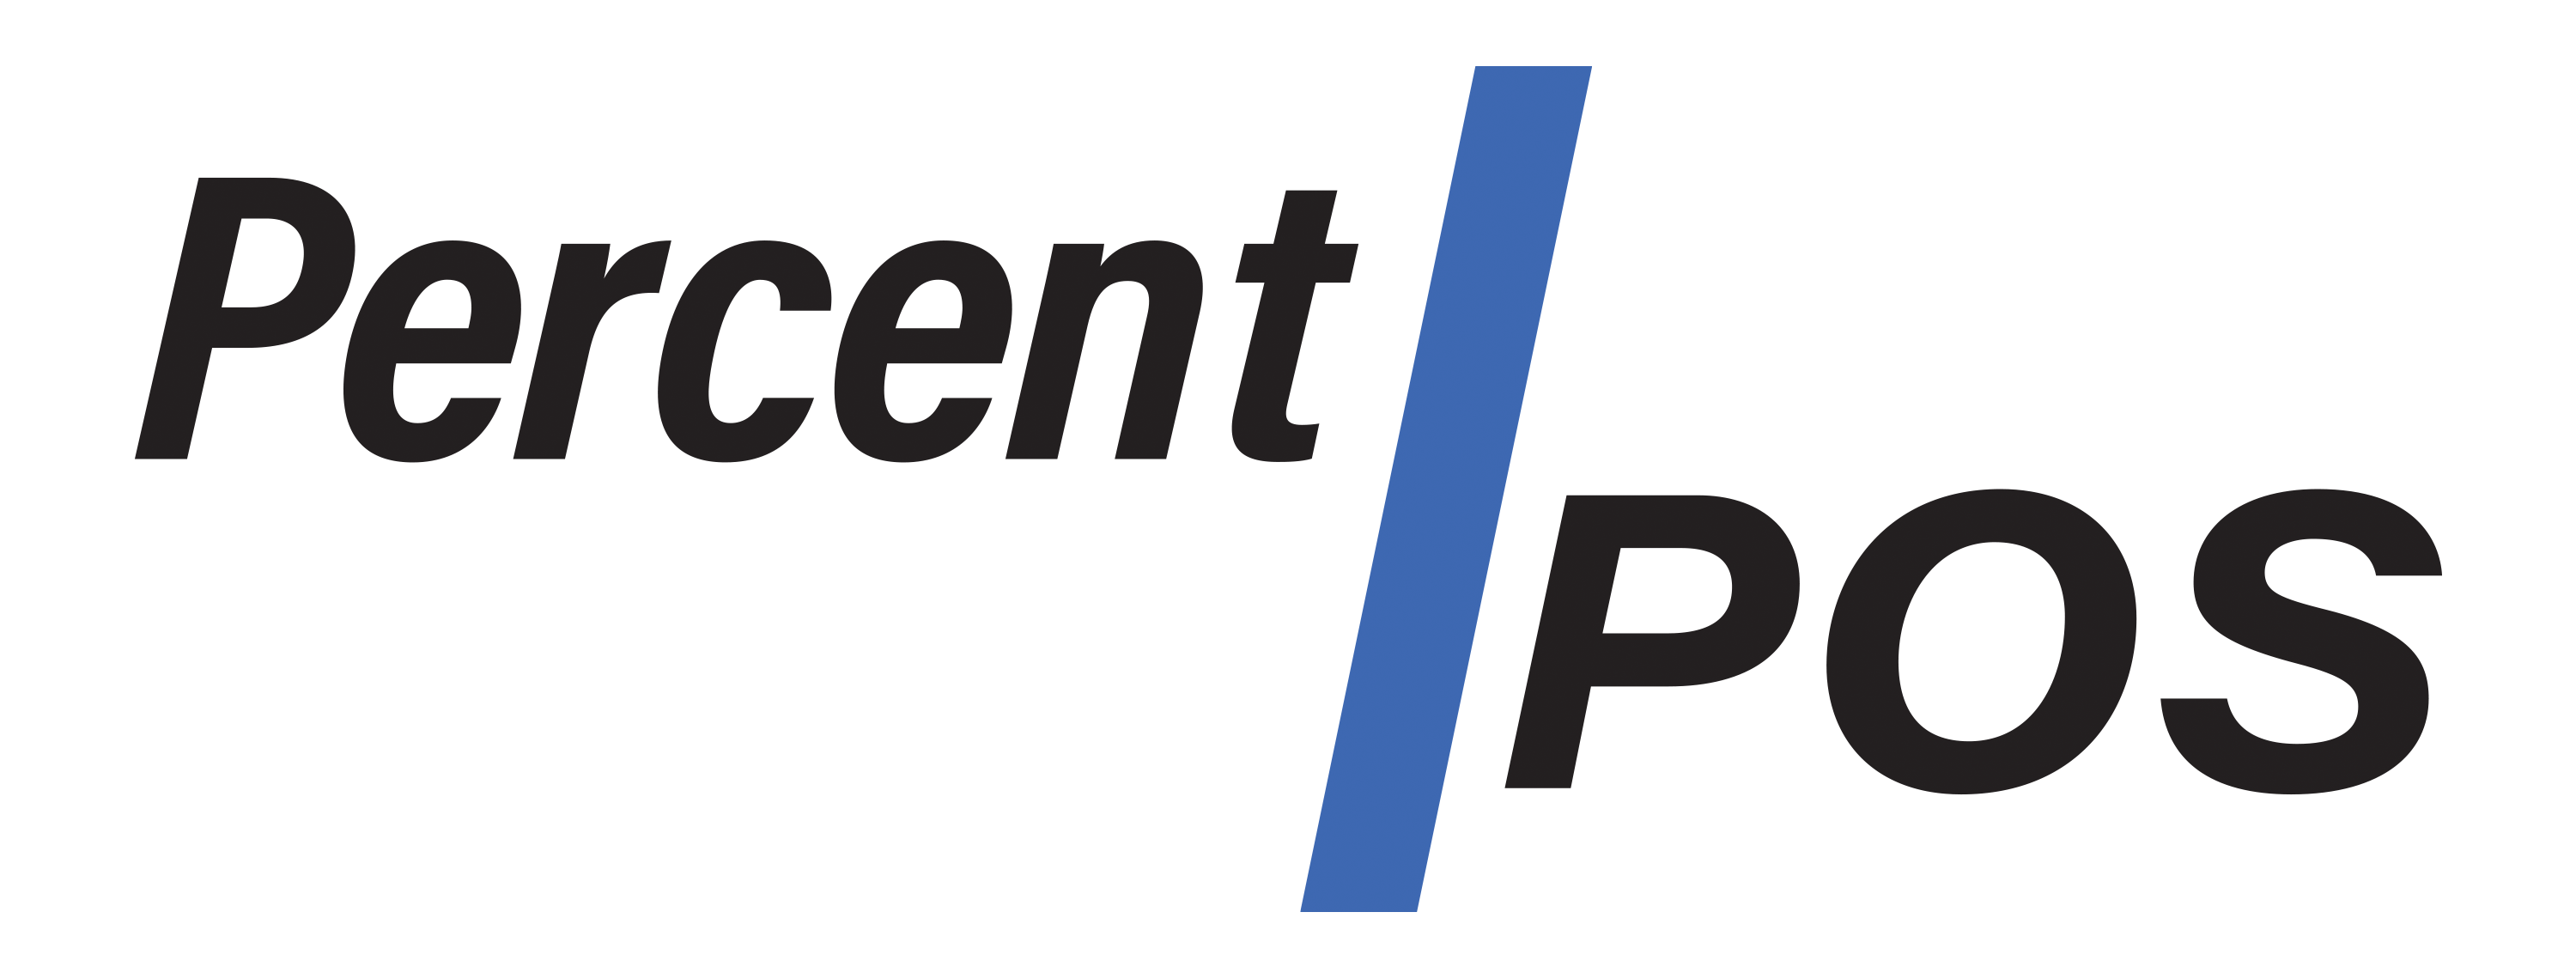 Percent POS